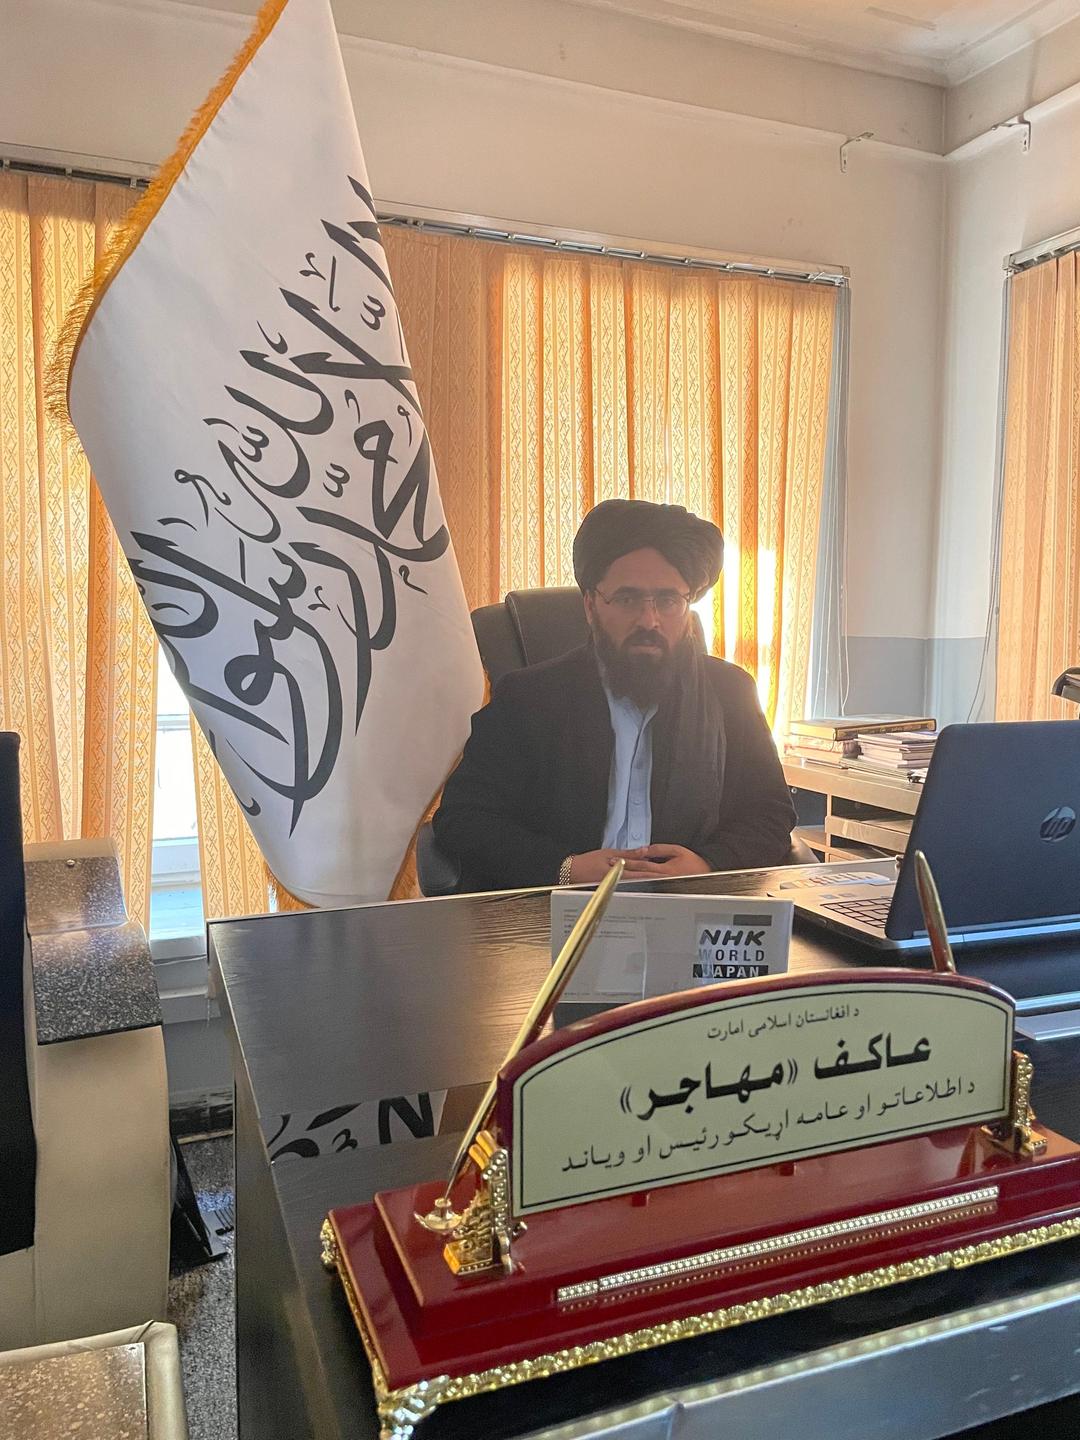 Ein Mann mit Turban und schwarzem Bart sitzt neben einer Fahne in einem Büro.